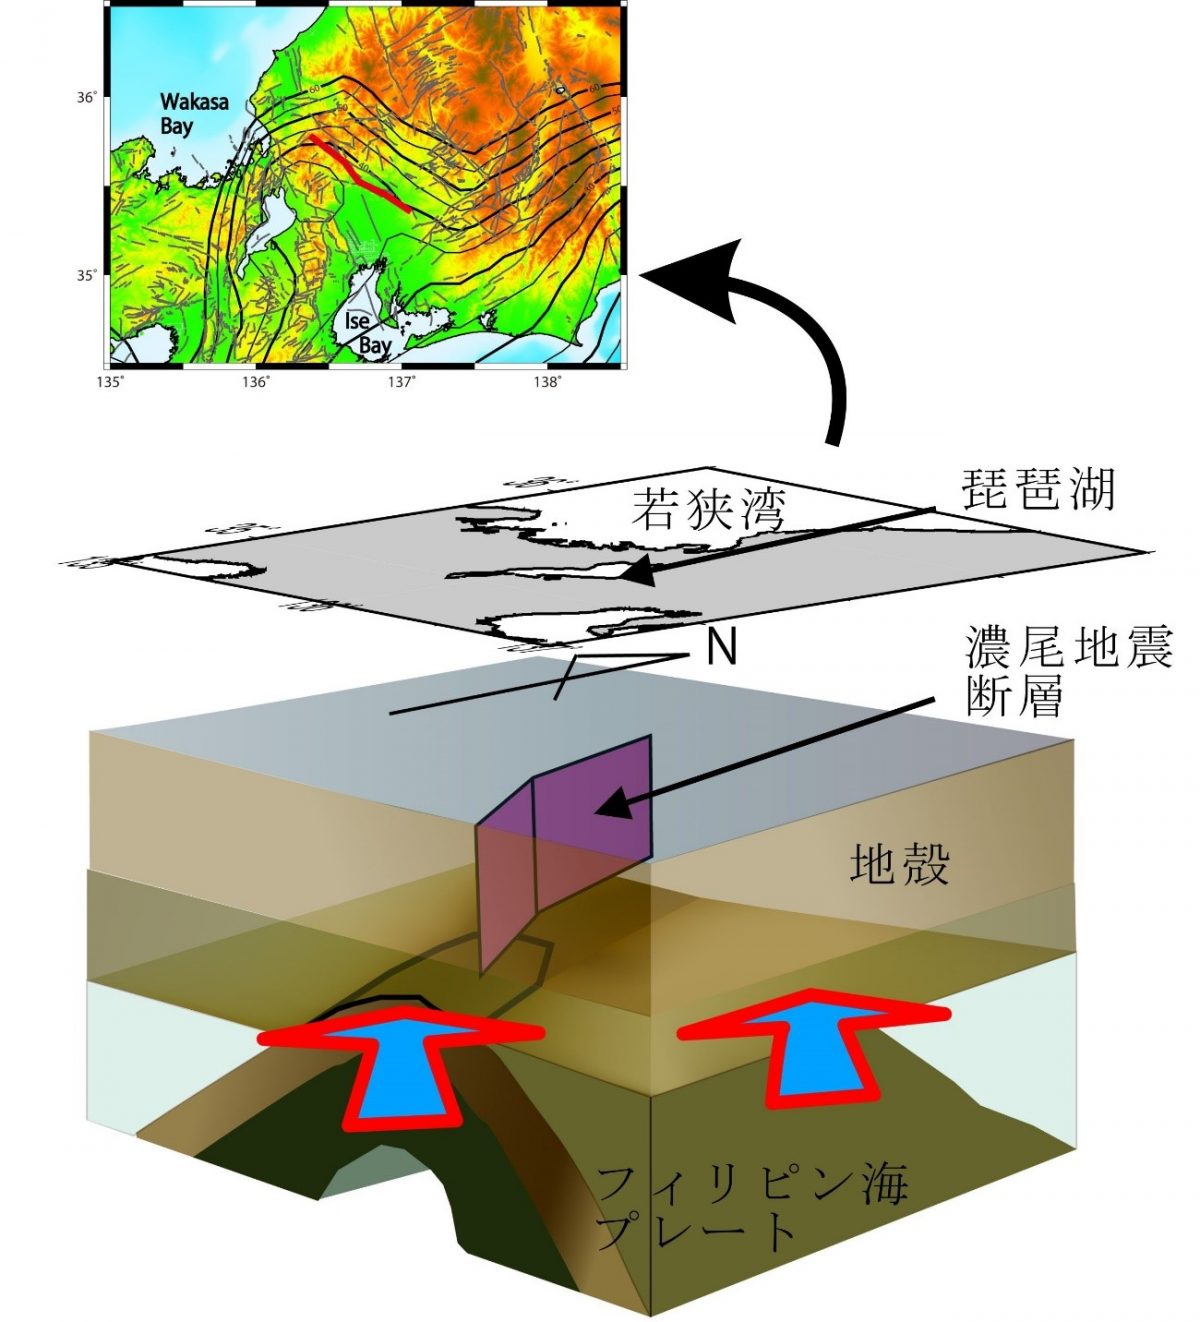 レシーバ関数解析から求められたフィリピン海プレーﾄと地殻の接触部の描像 11年濃尾地震 Mj8 0 の発生原因 東京大学地震研究所